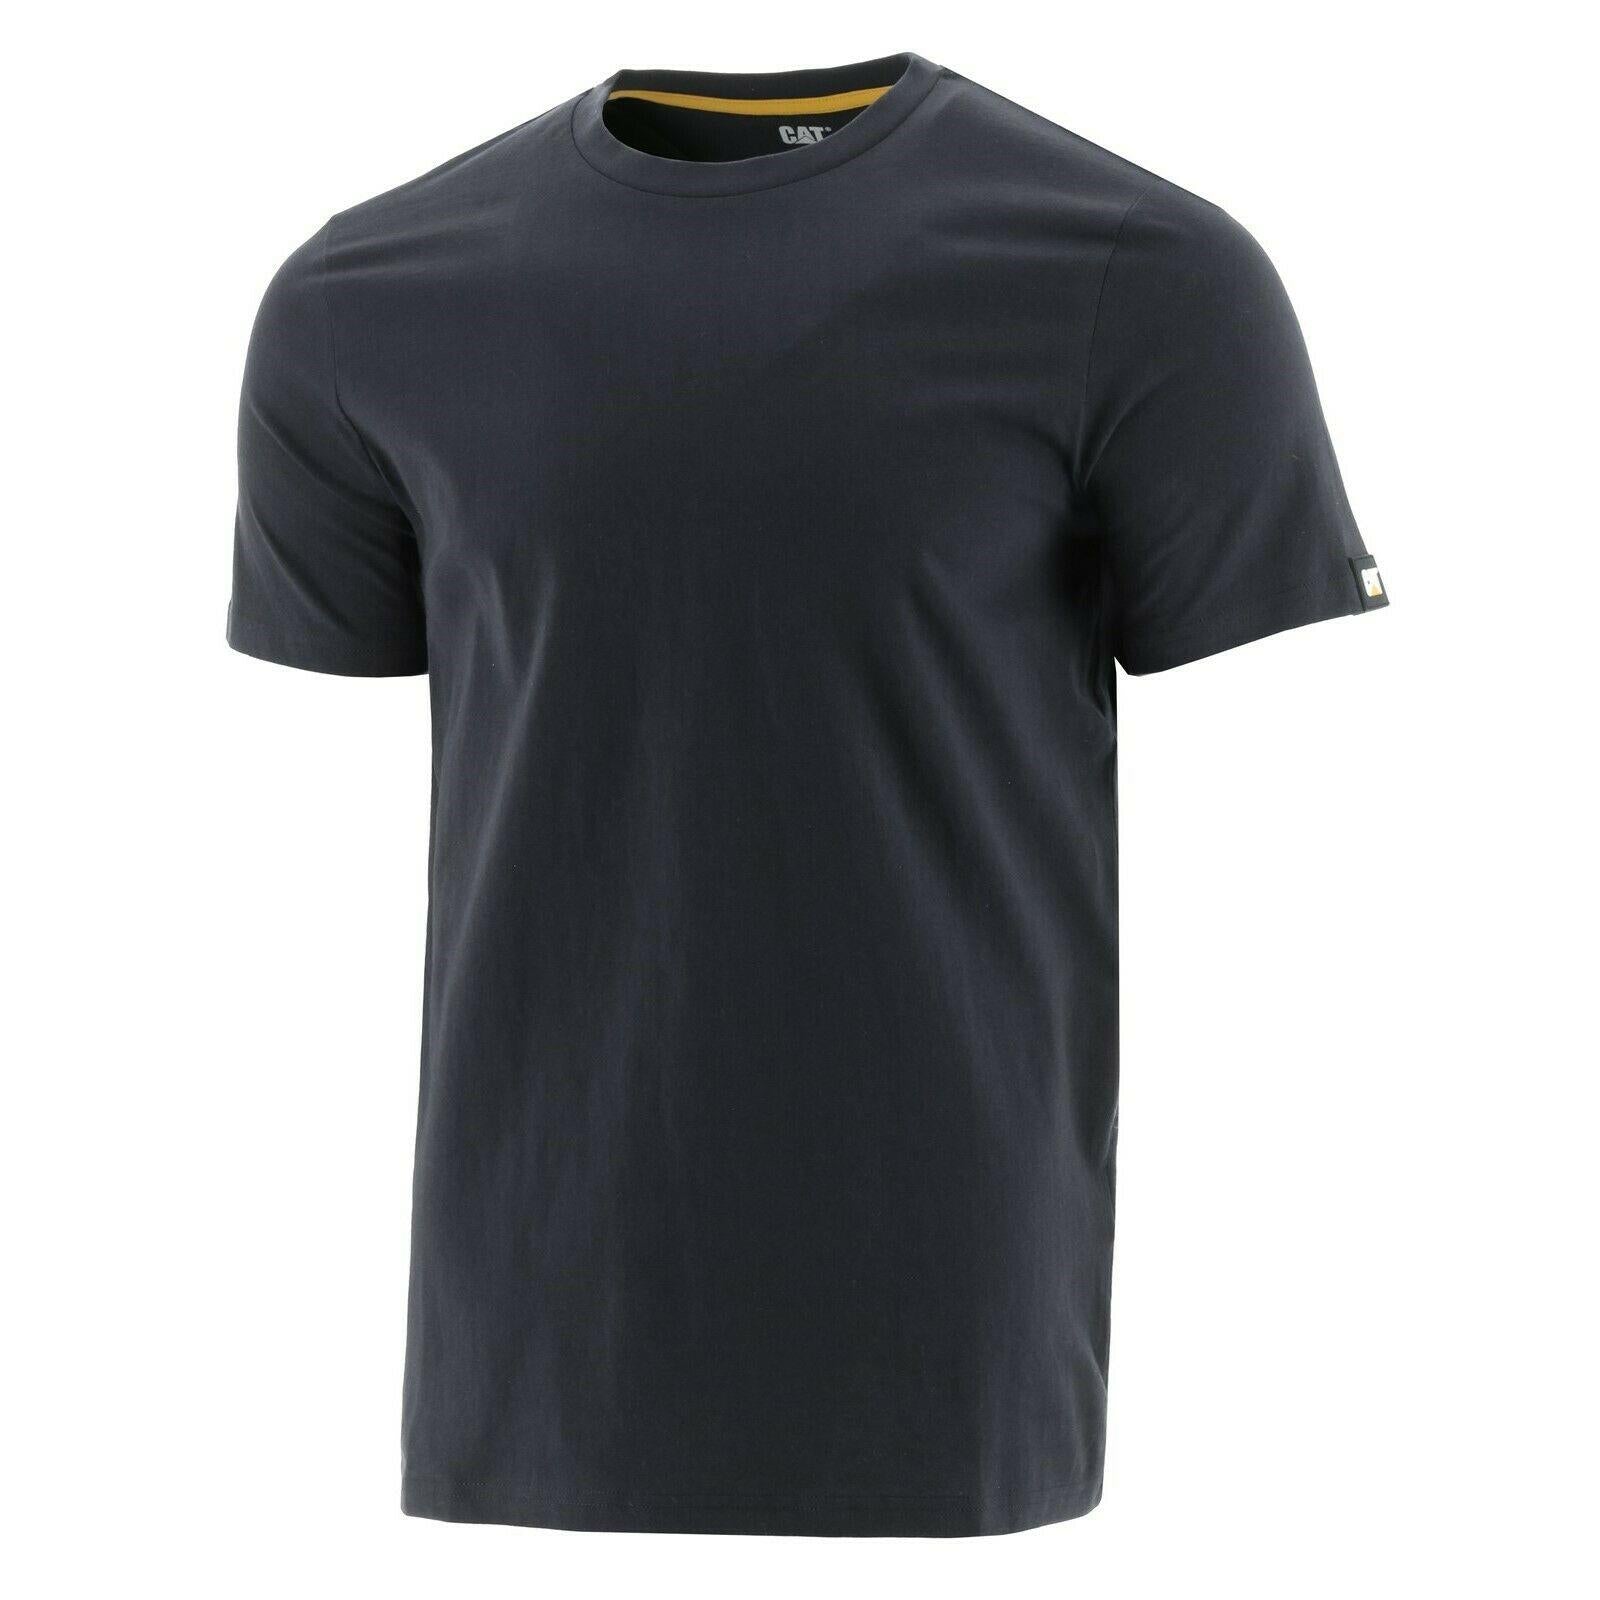 Caterpillar CAT Essentials Tee black cotton short-sleeve T-shirt #1510590